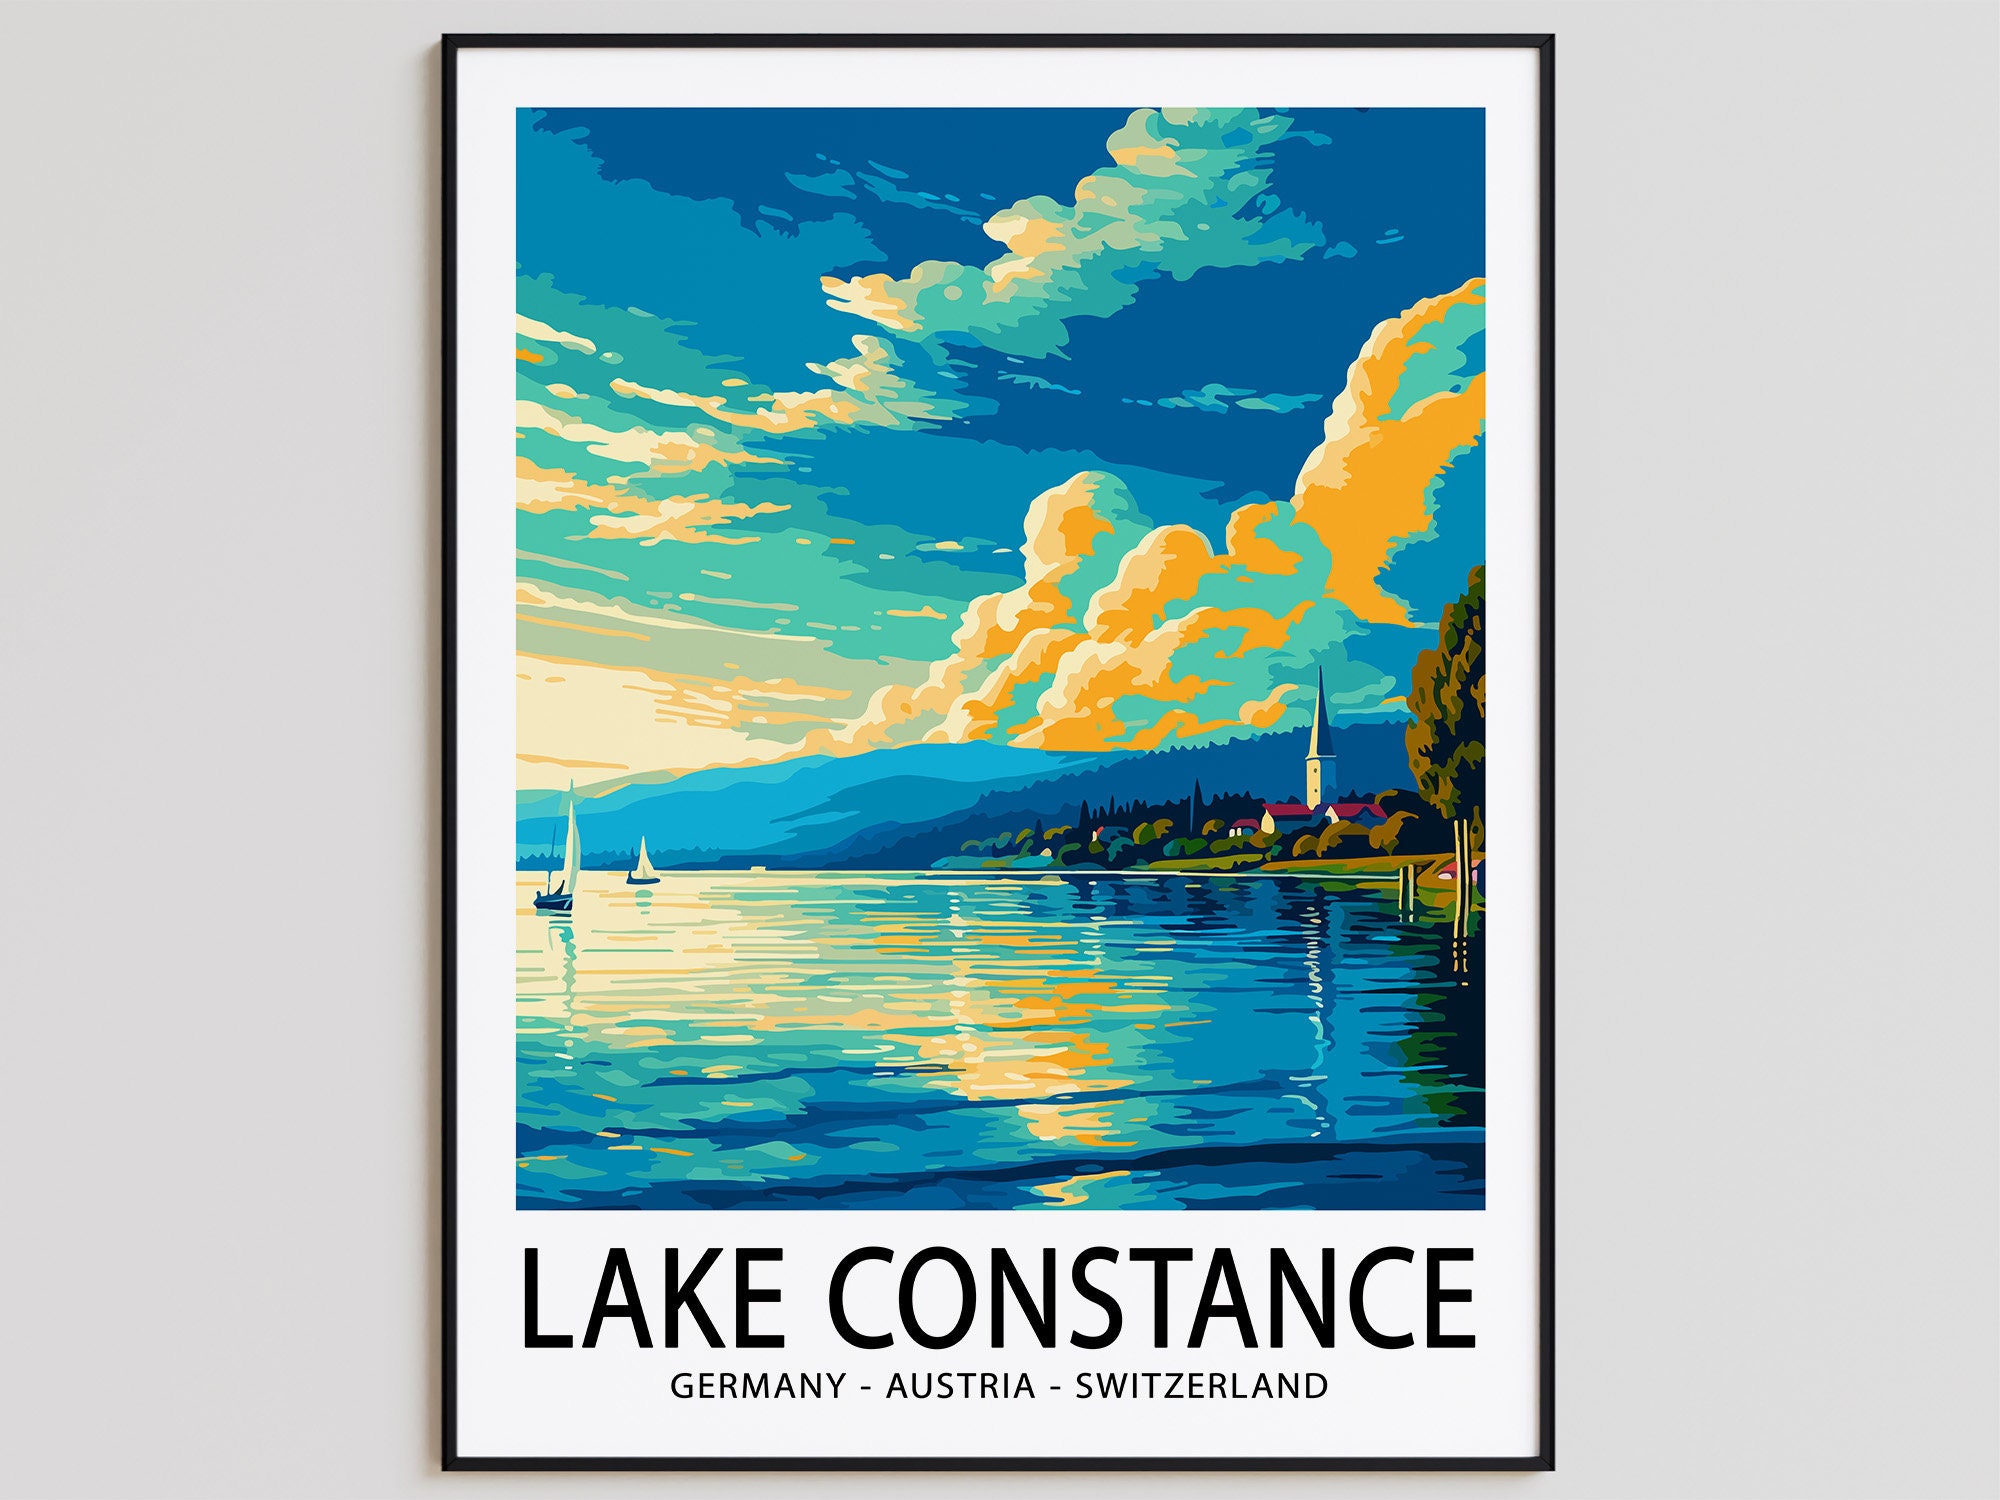 Lake constance - Etsy.de